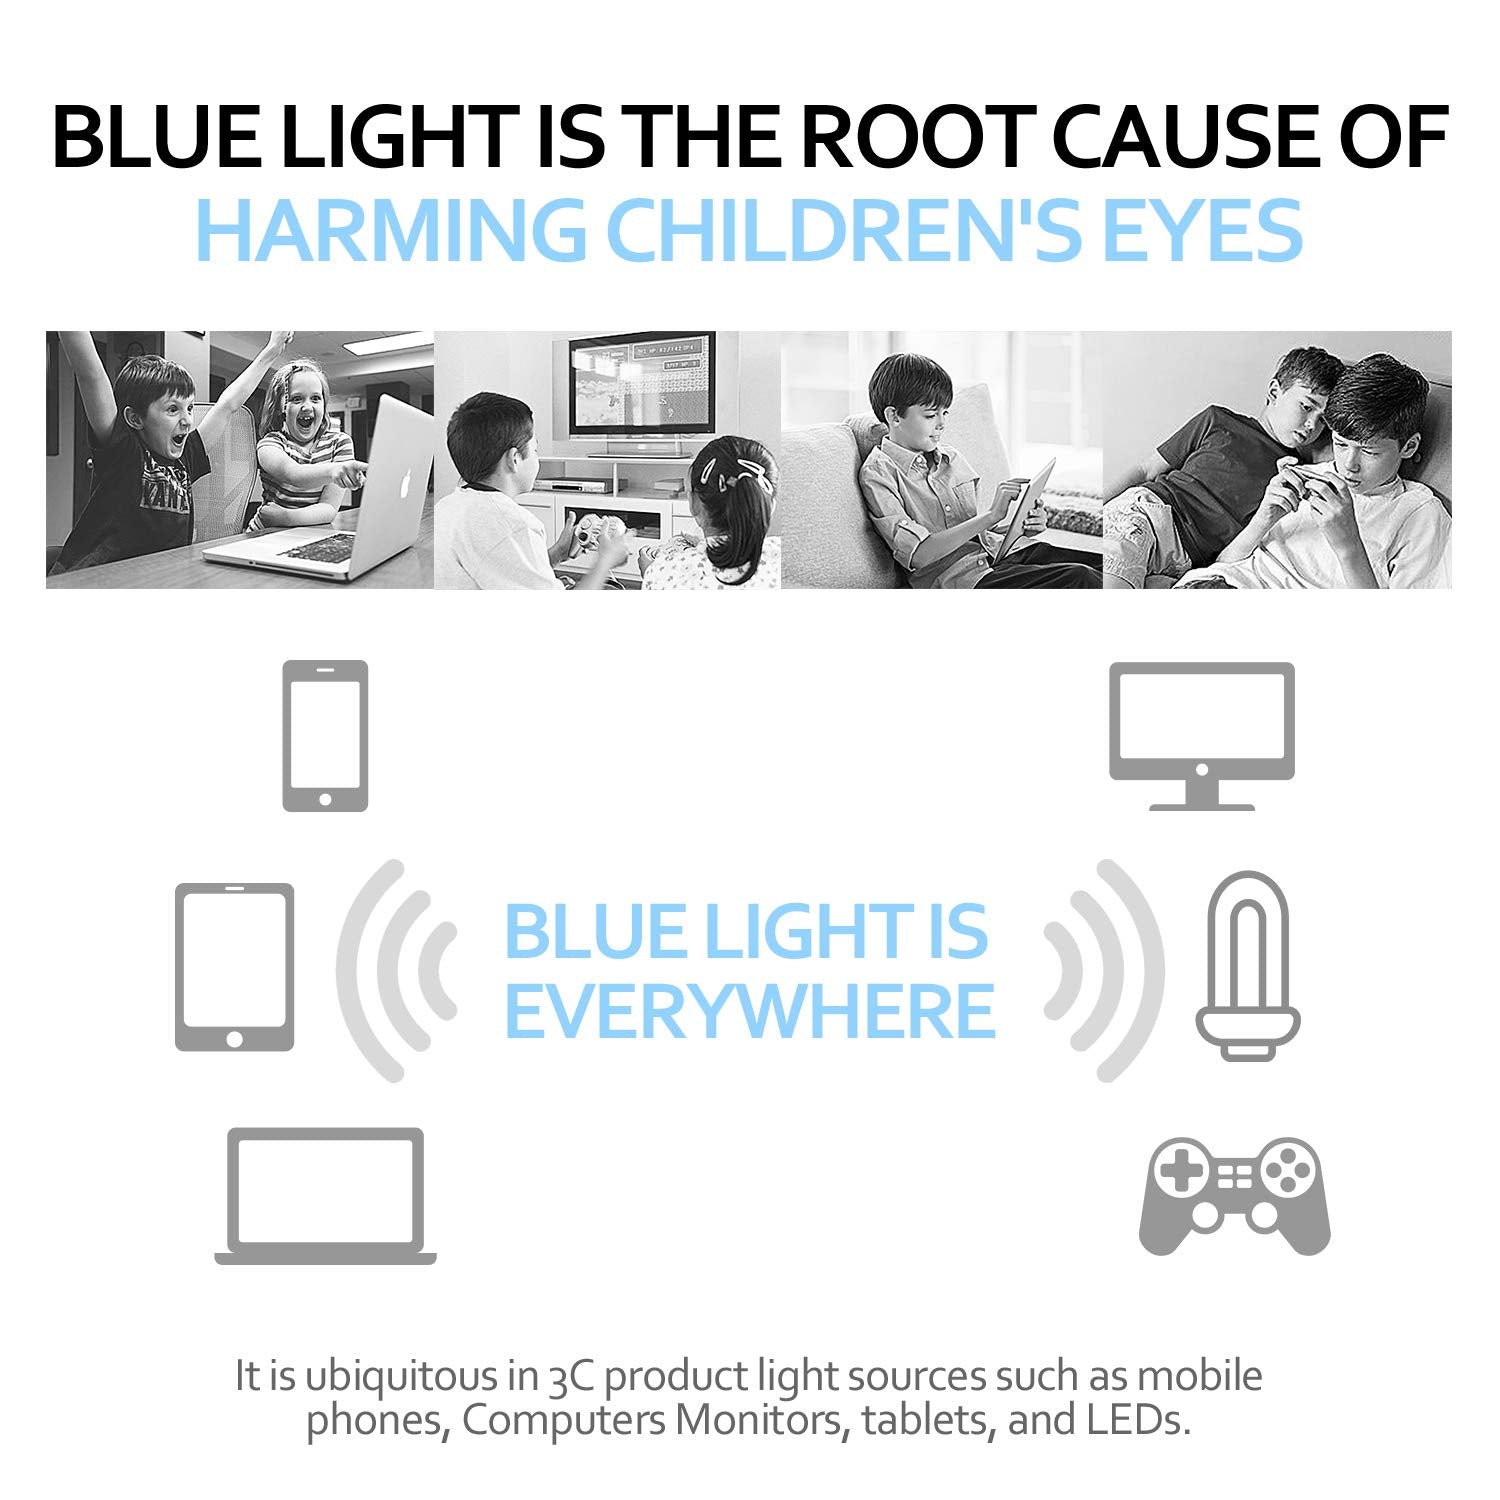 Glasses: Anti-Blue Light Children Novelty Silicone Frame